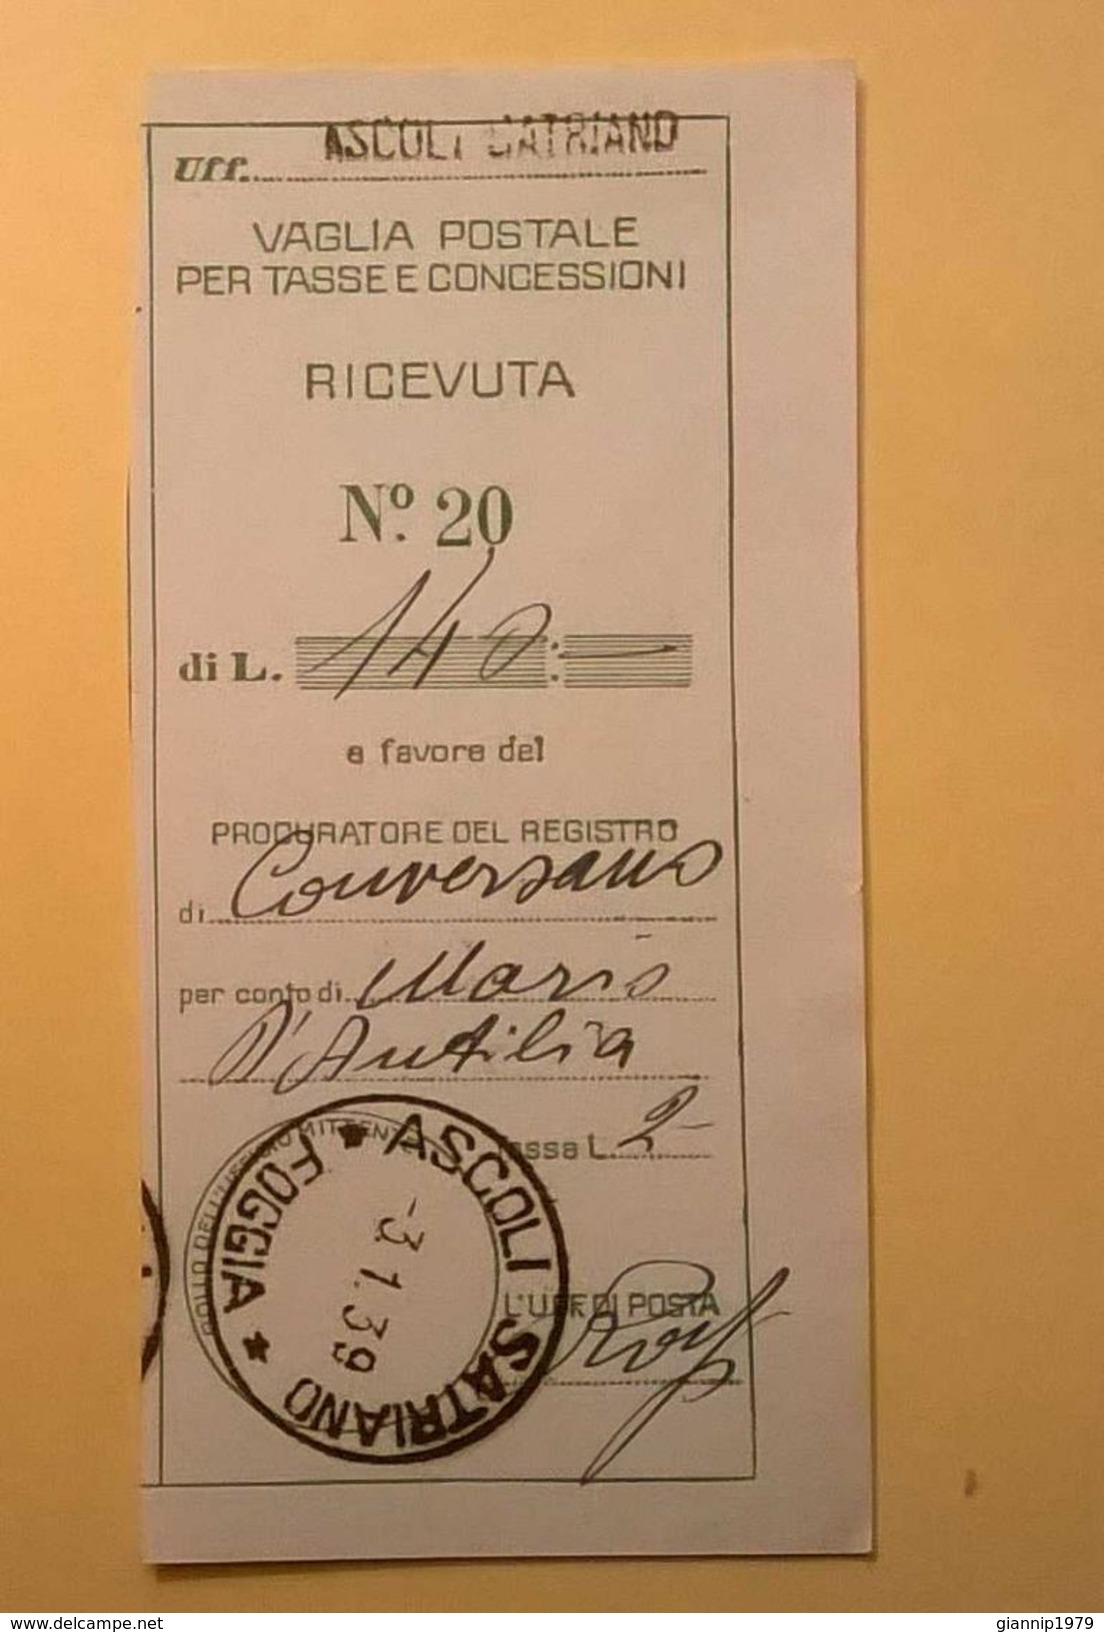 VAGLIA POSTALE RICEVUTA ASCOLI SATRIANO FOGGIA 1939 - Tax On Money Orders